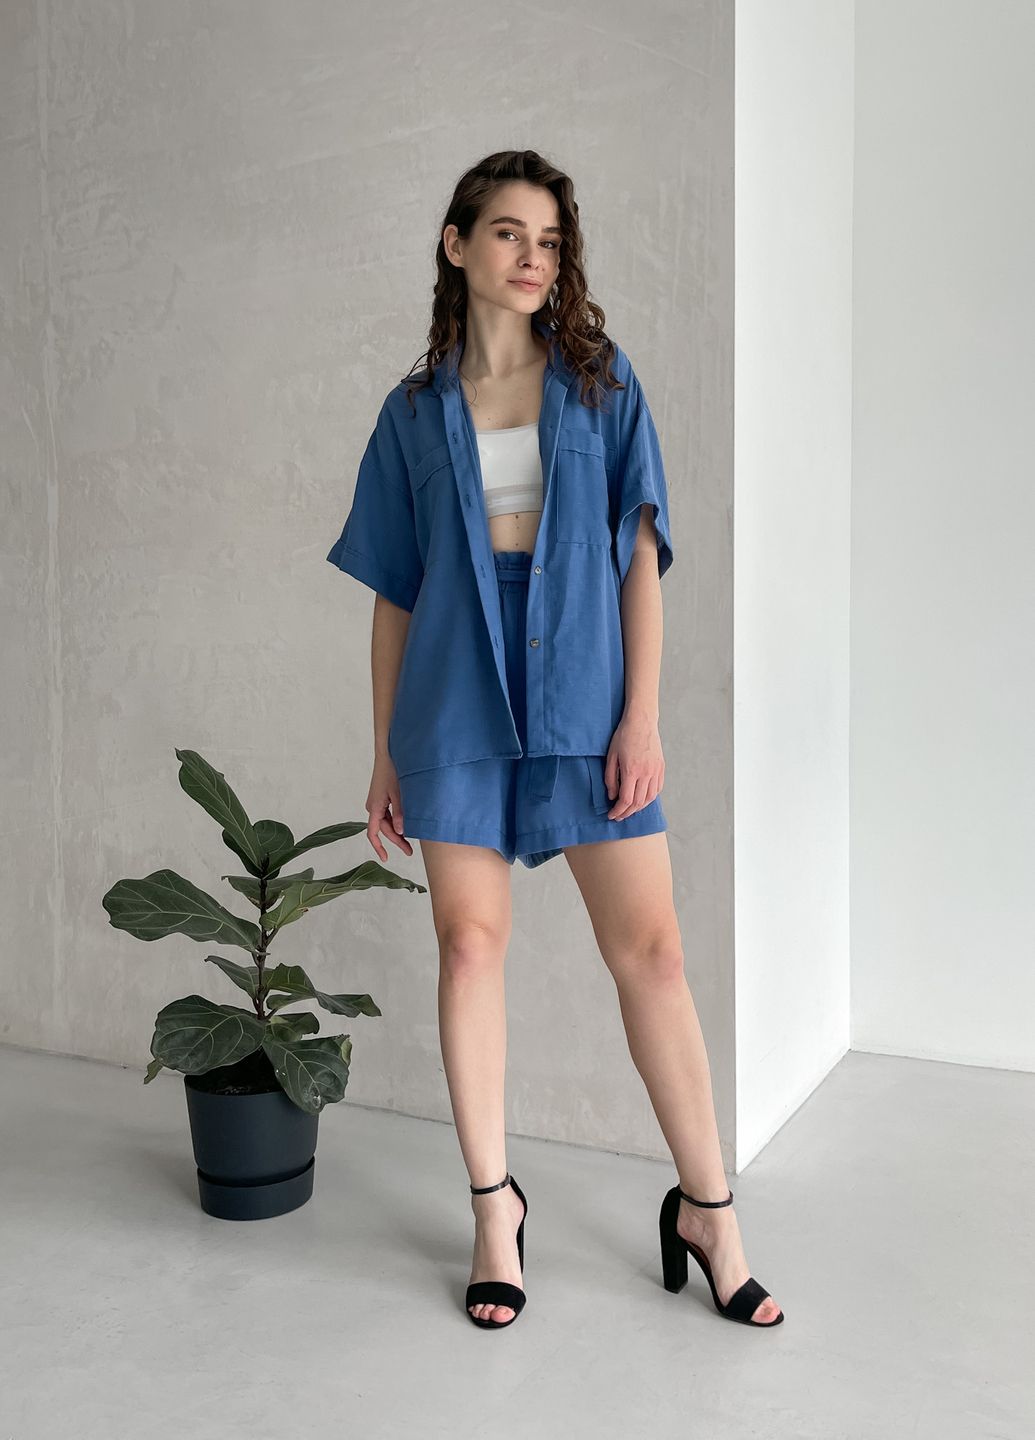 Купить Женская льняная рубашка с коротким рукавом синяя Merlini Фриули 200000143, размер 42-44 в интернет-магазине